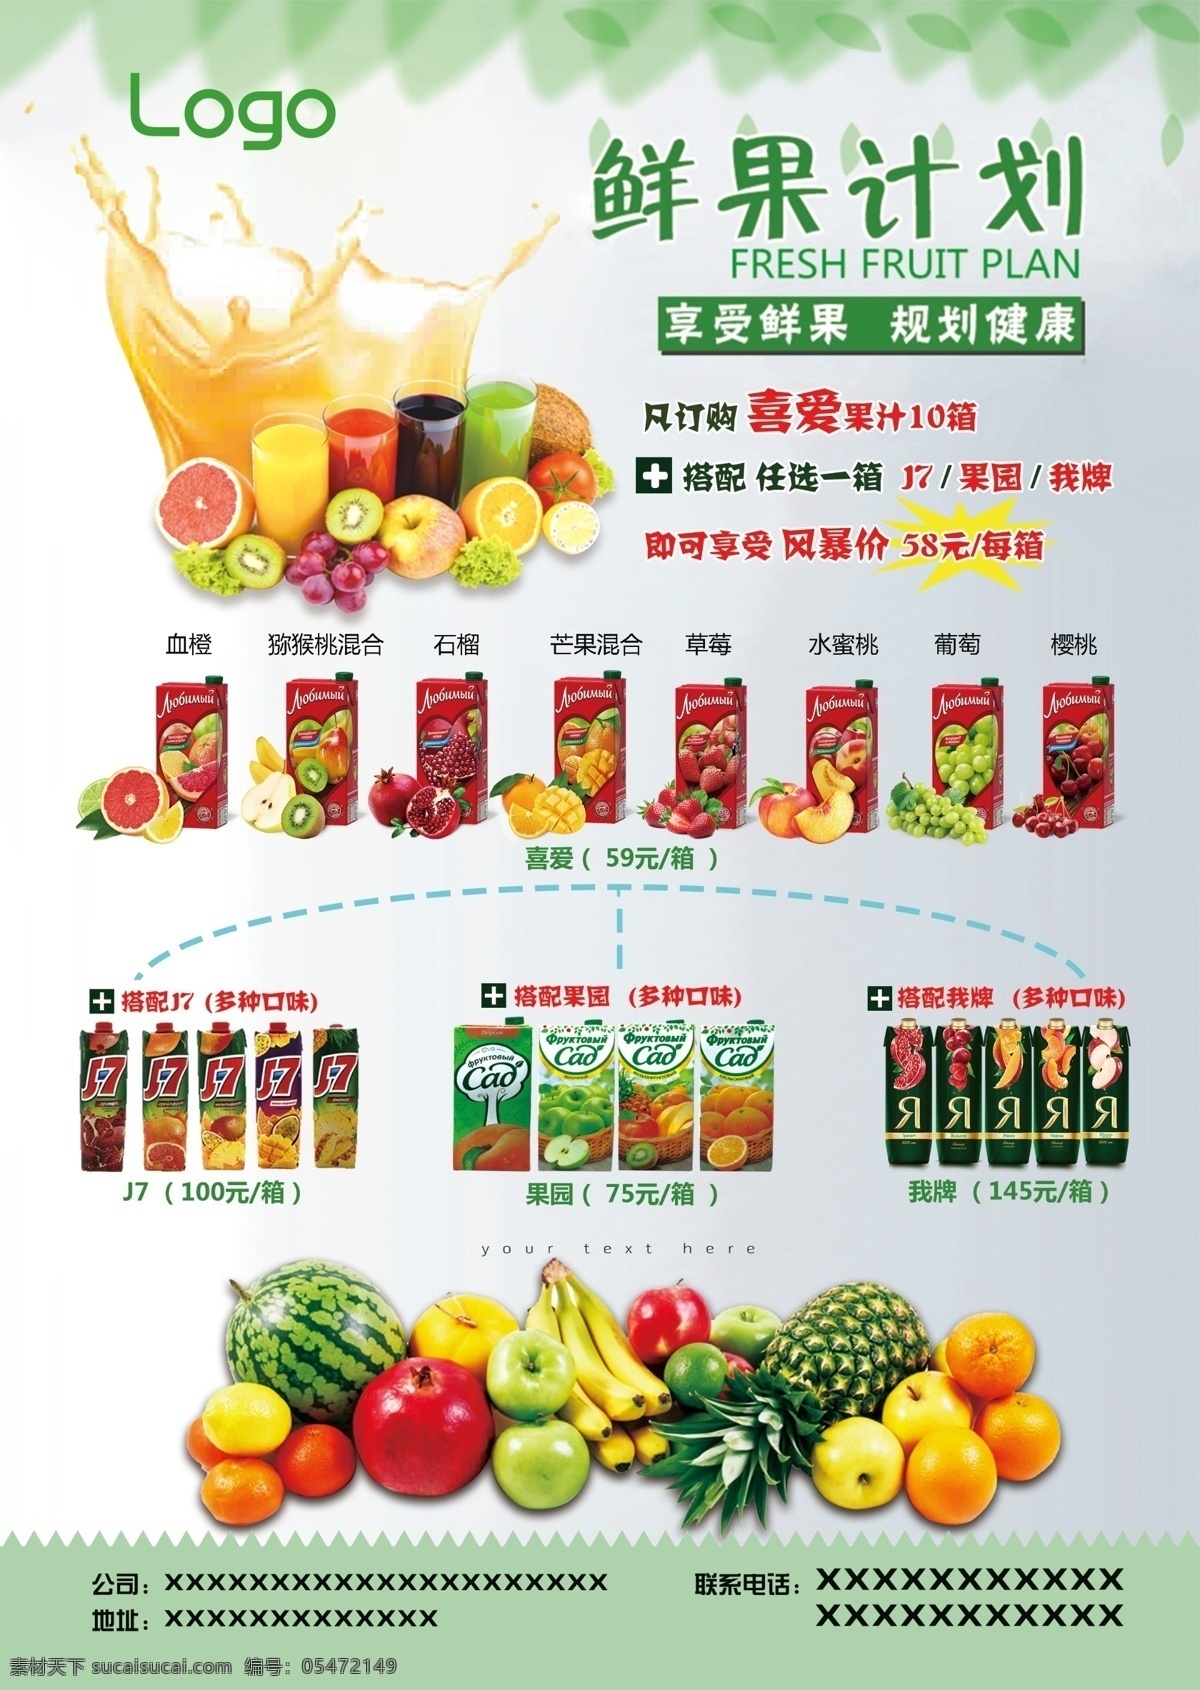 果汁 a4 宣传单 果汁宣传单 进口饮料 果园 新鲜水果 零添加